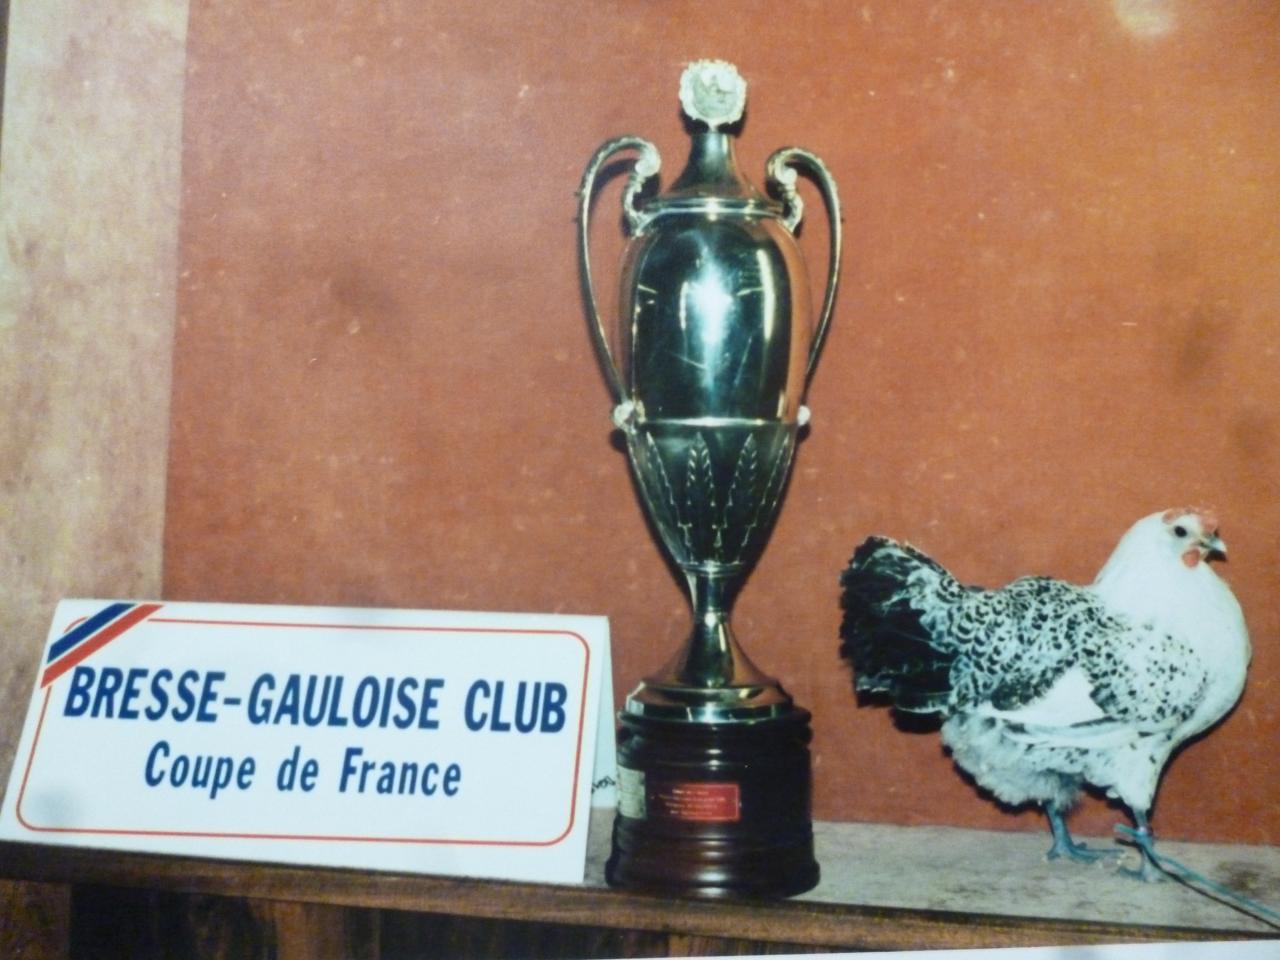 coupe de France du Bresse-Gauloise Club